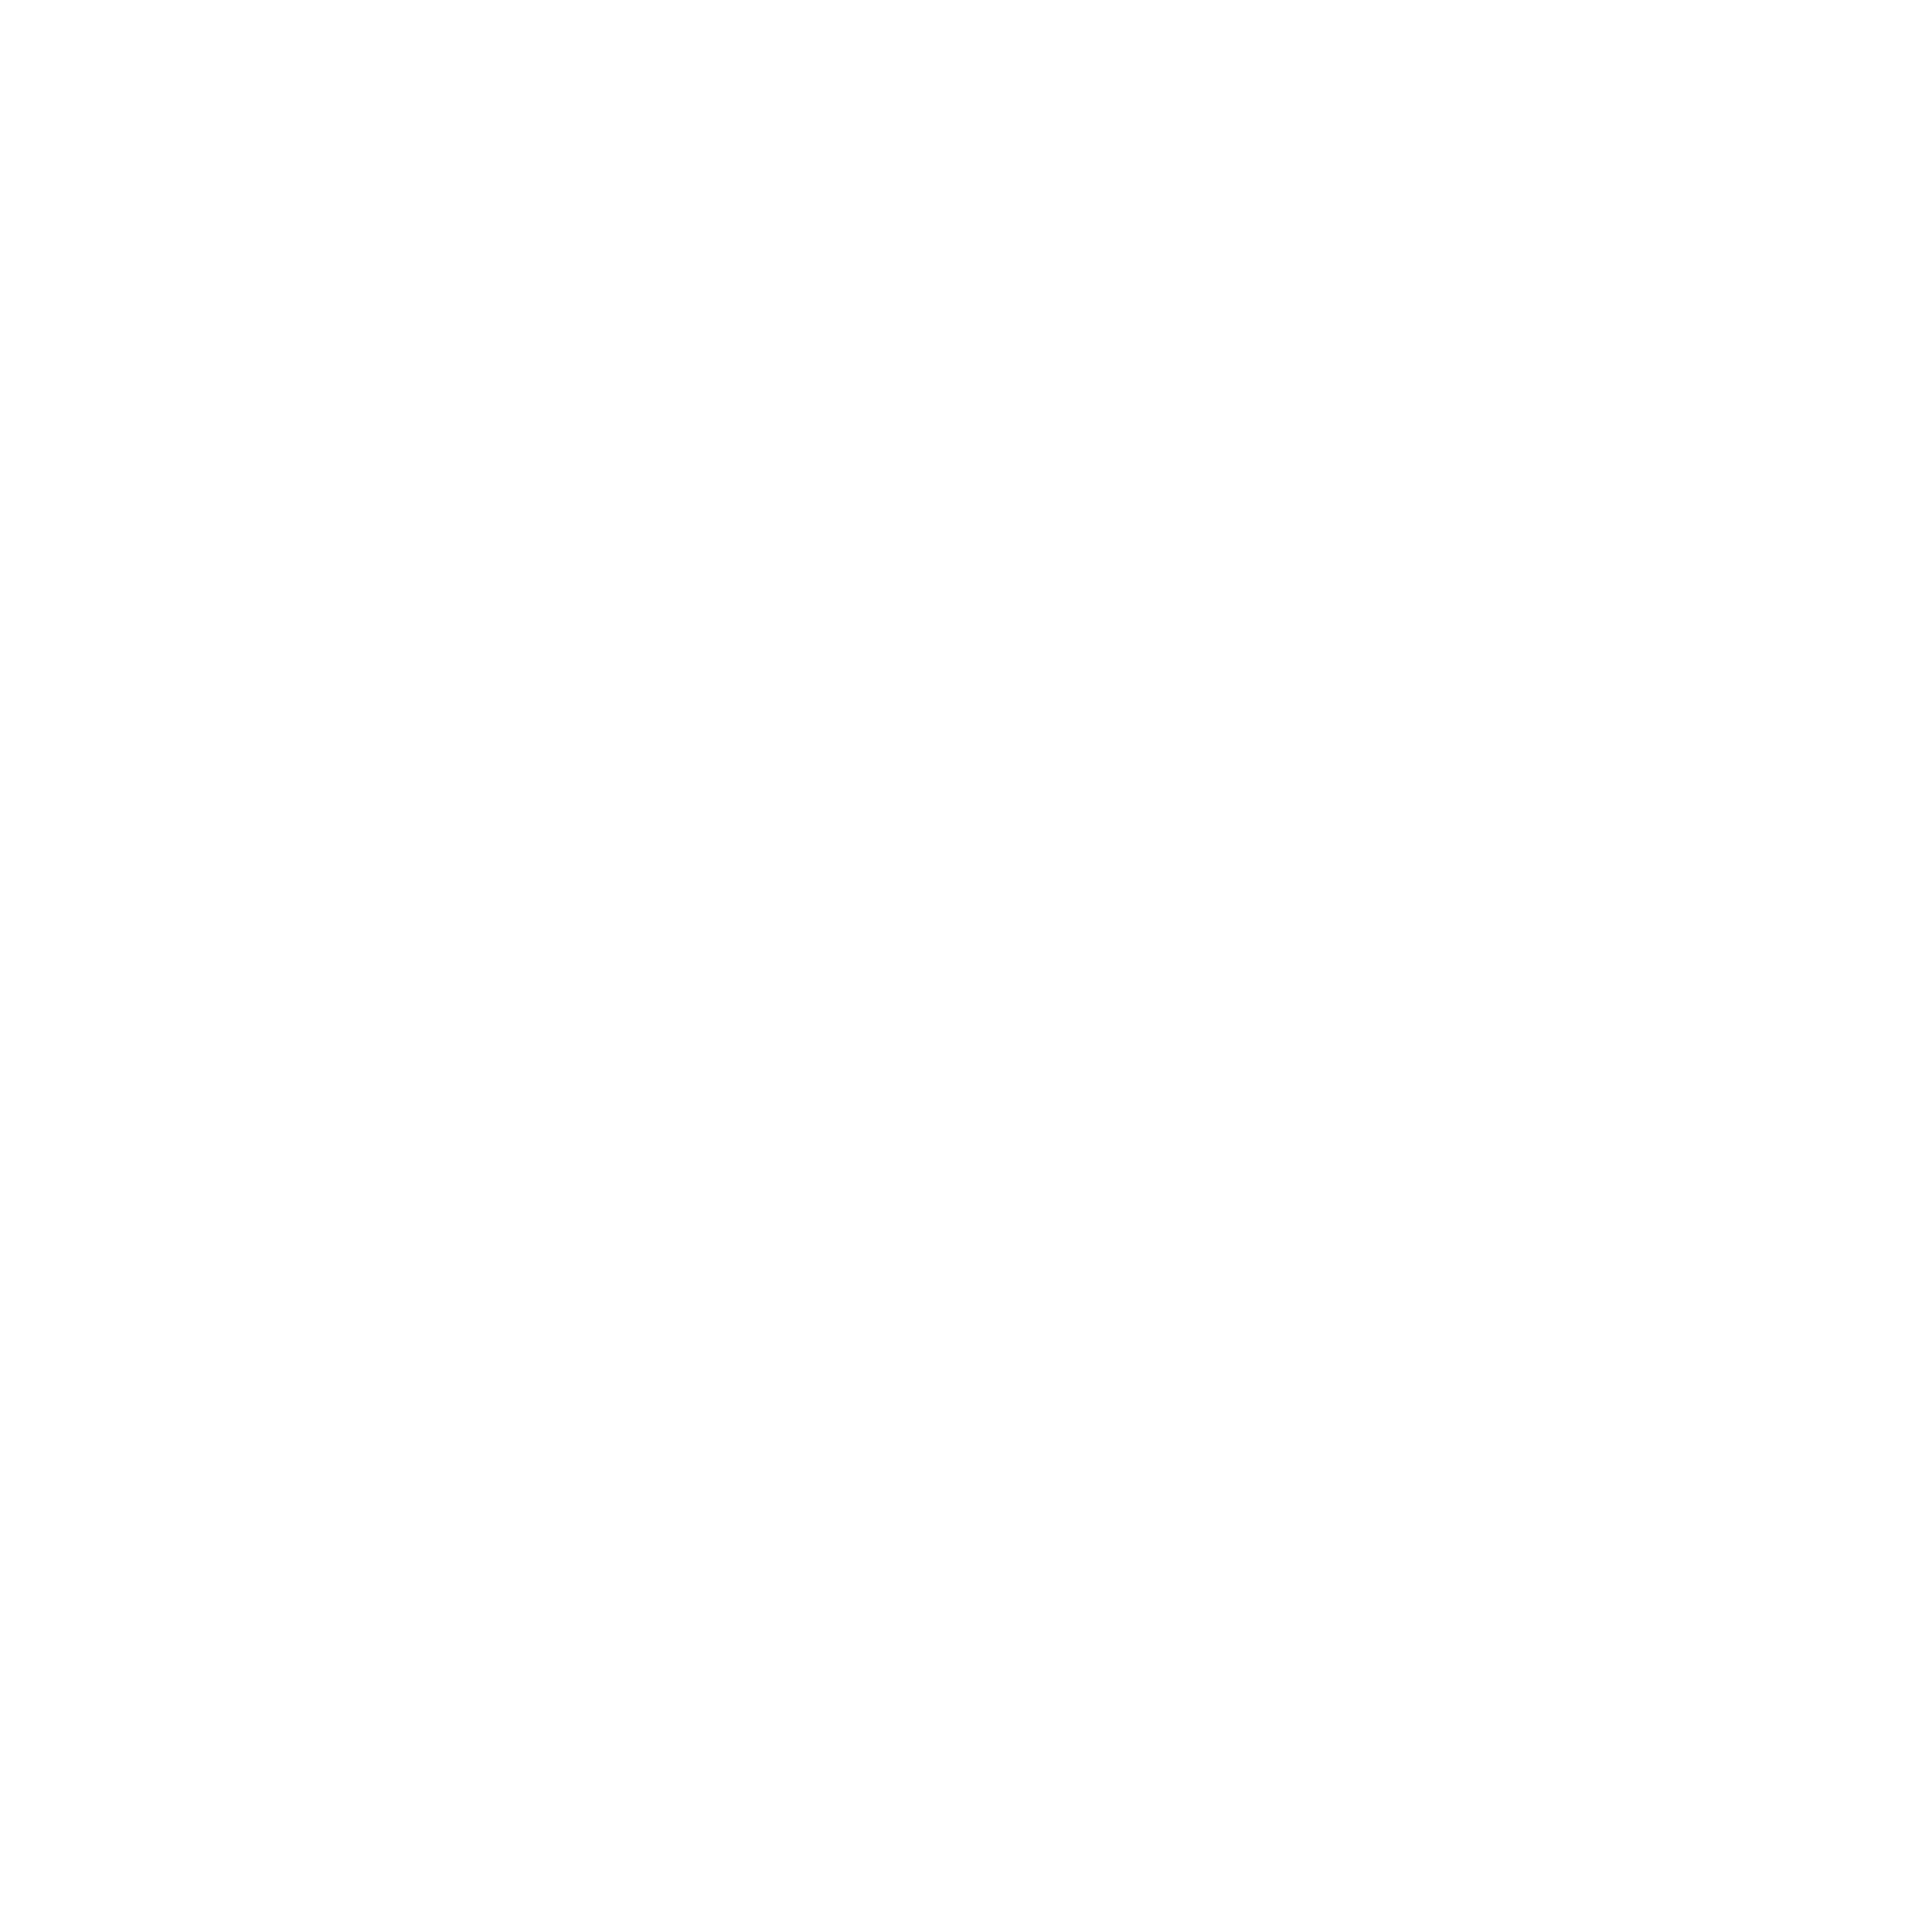 Tennant company white logo